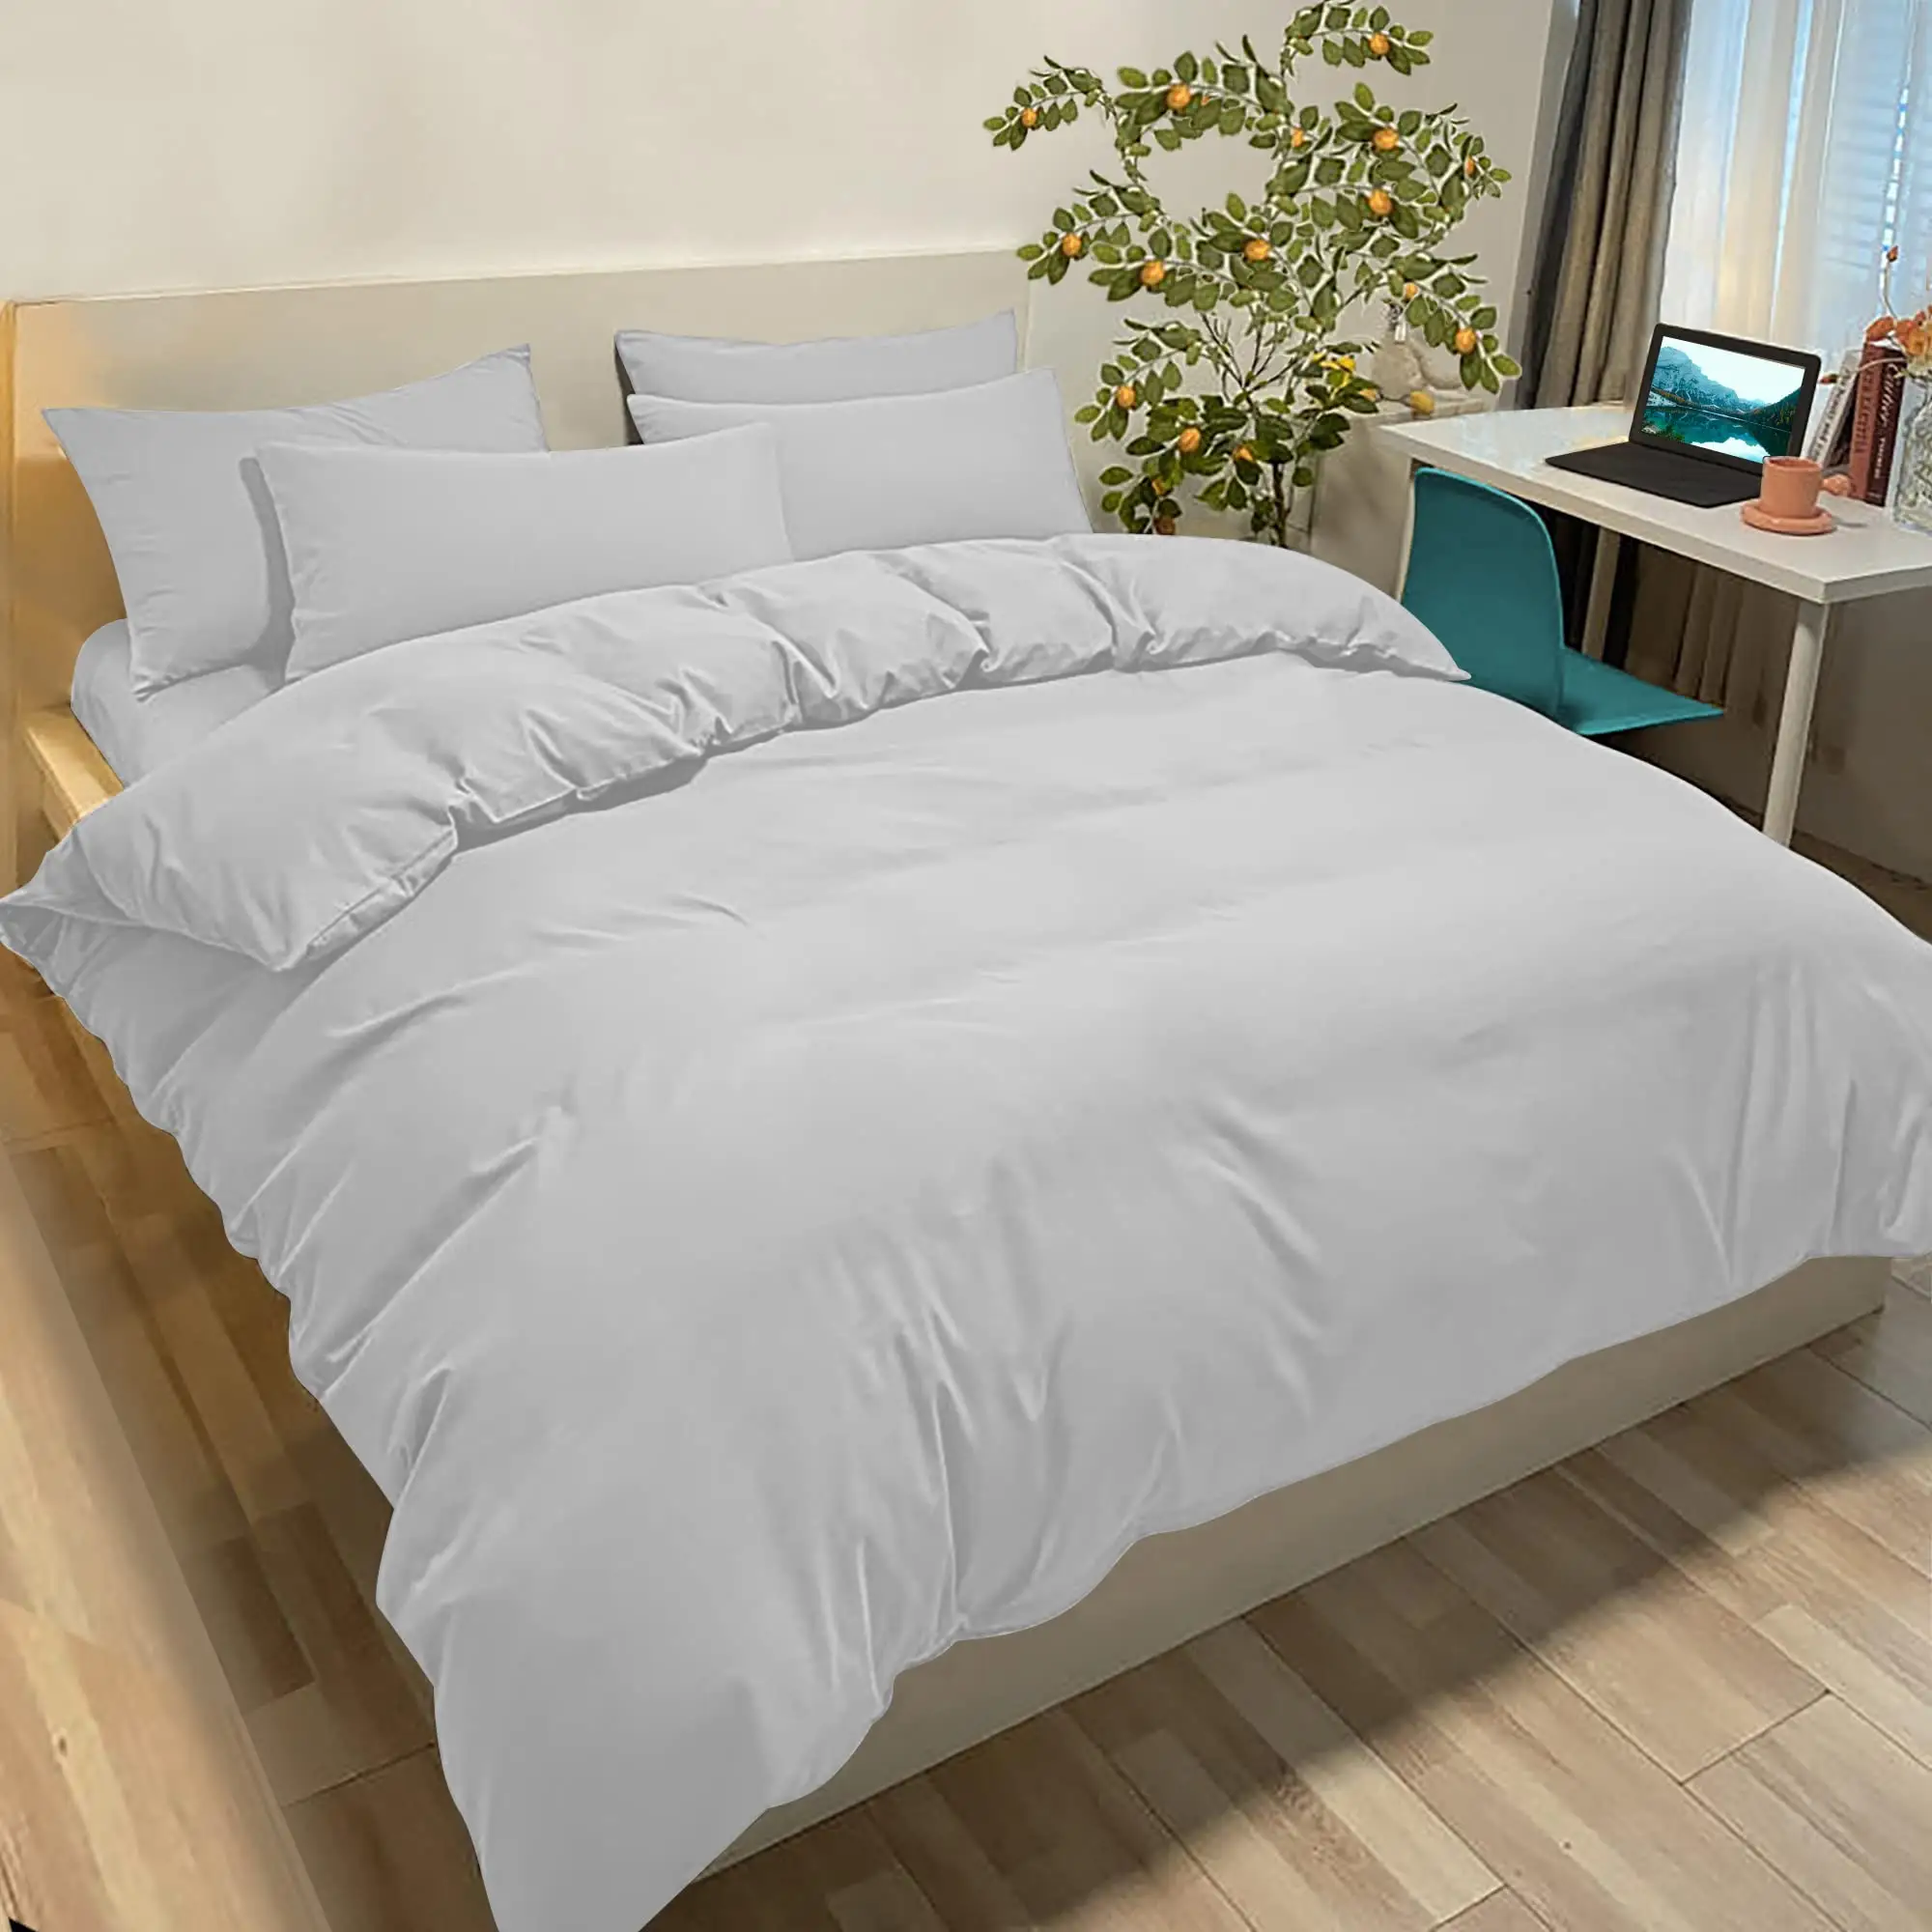 Премиум 80gsm матовый Комплект постельного белья из полиэстера-Поднимите вашу спальню и гостиничное постельное белье.